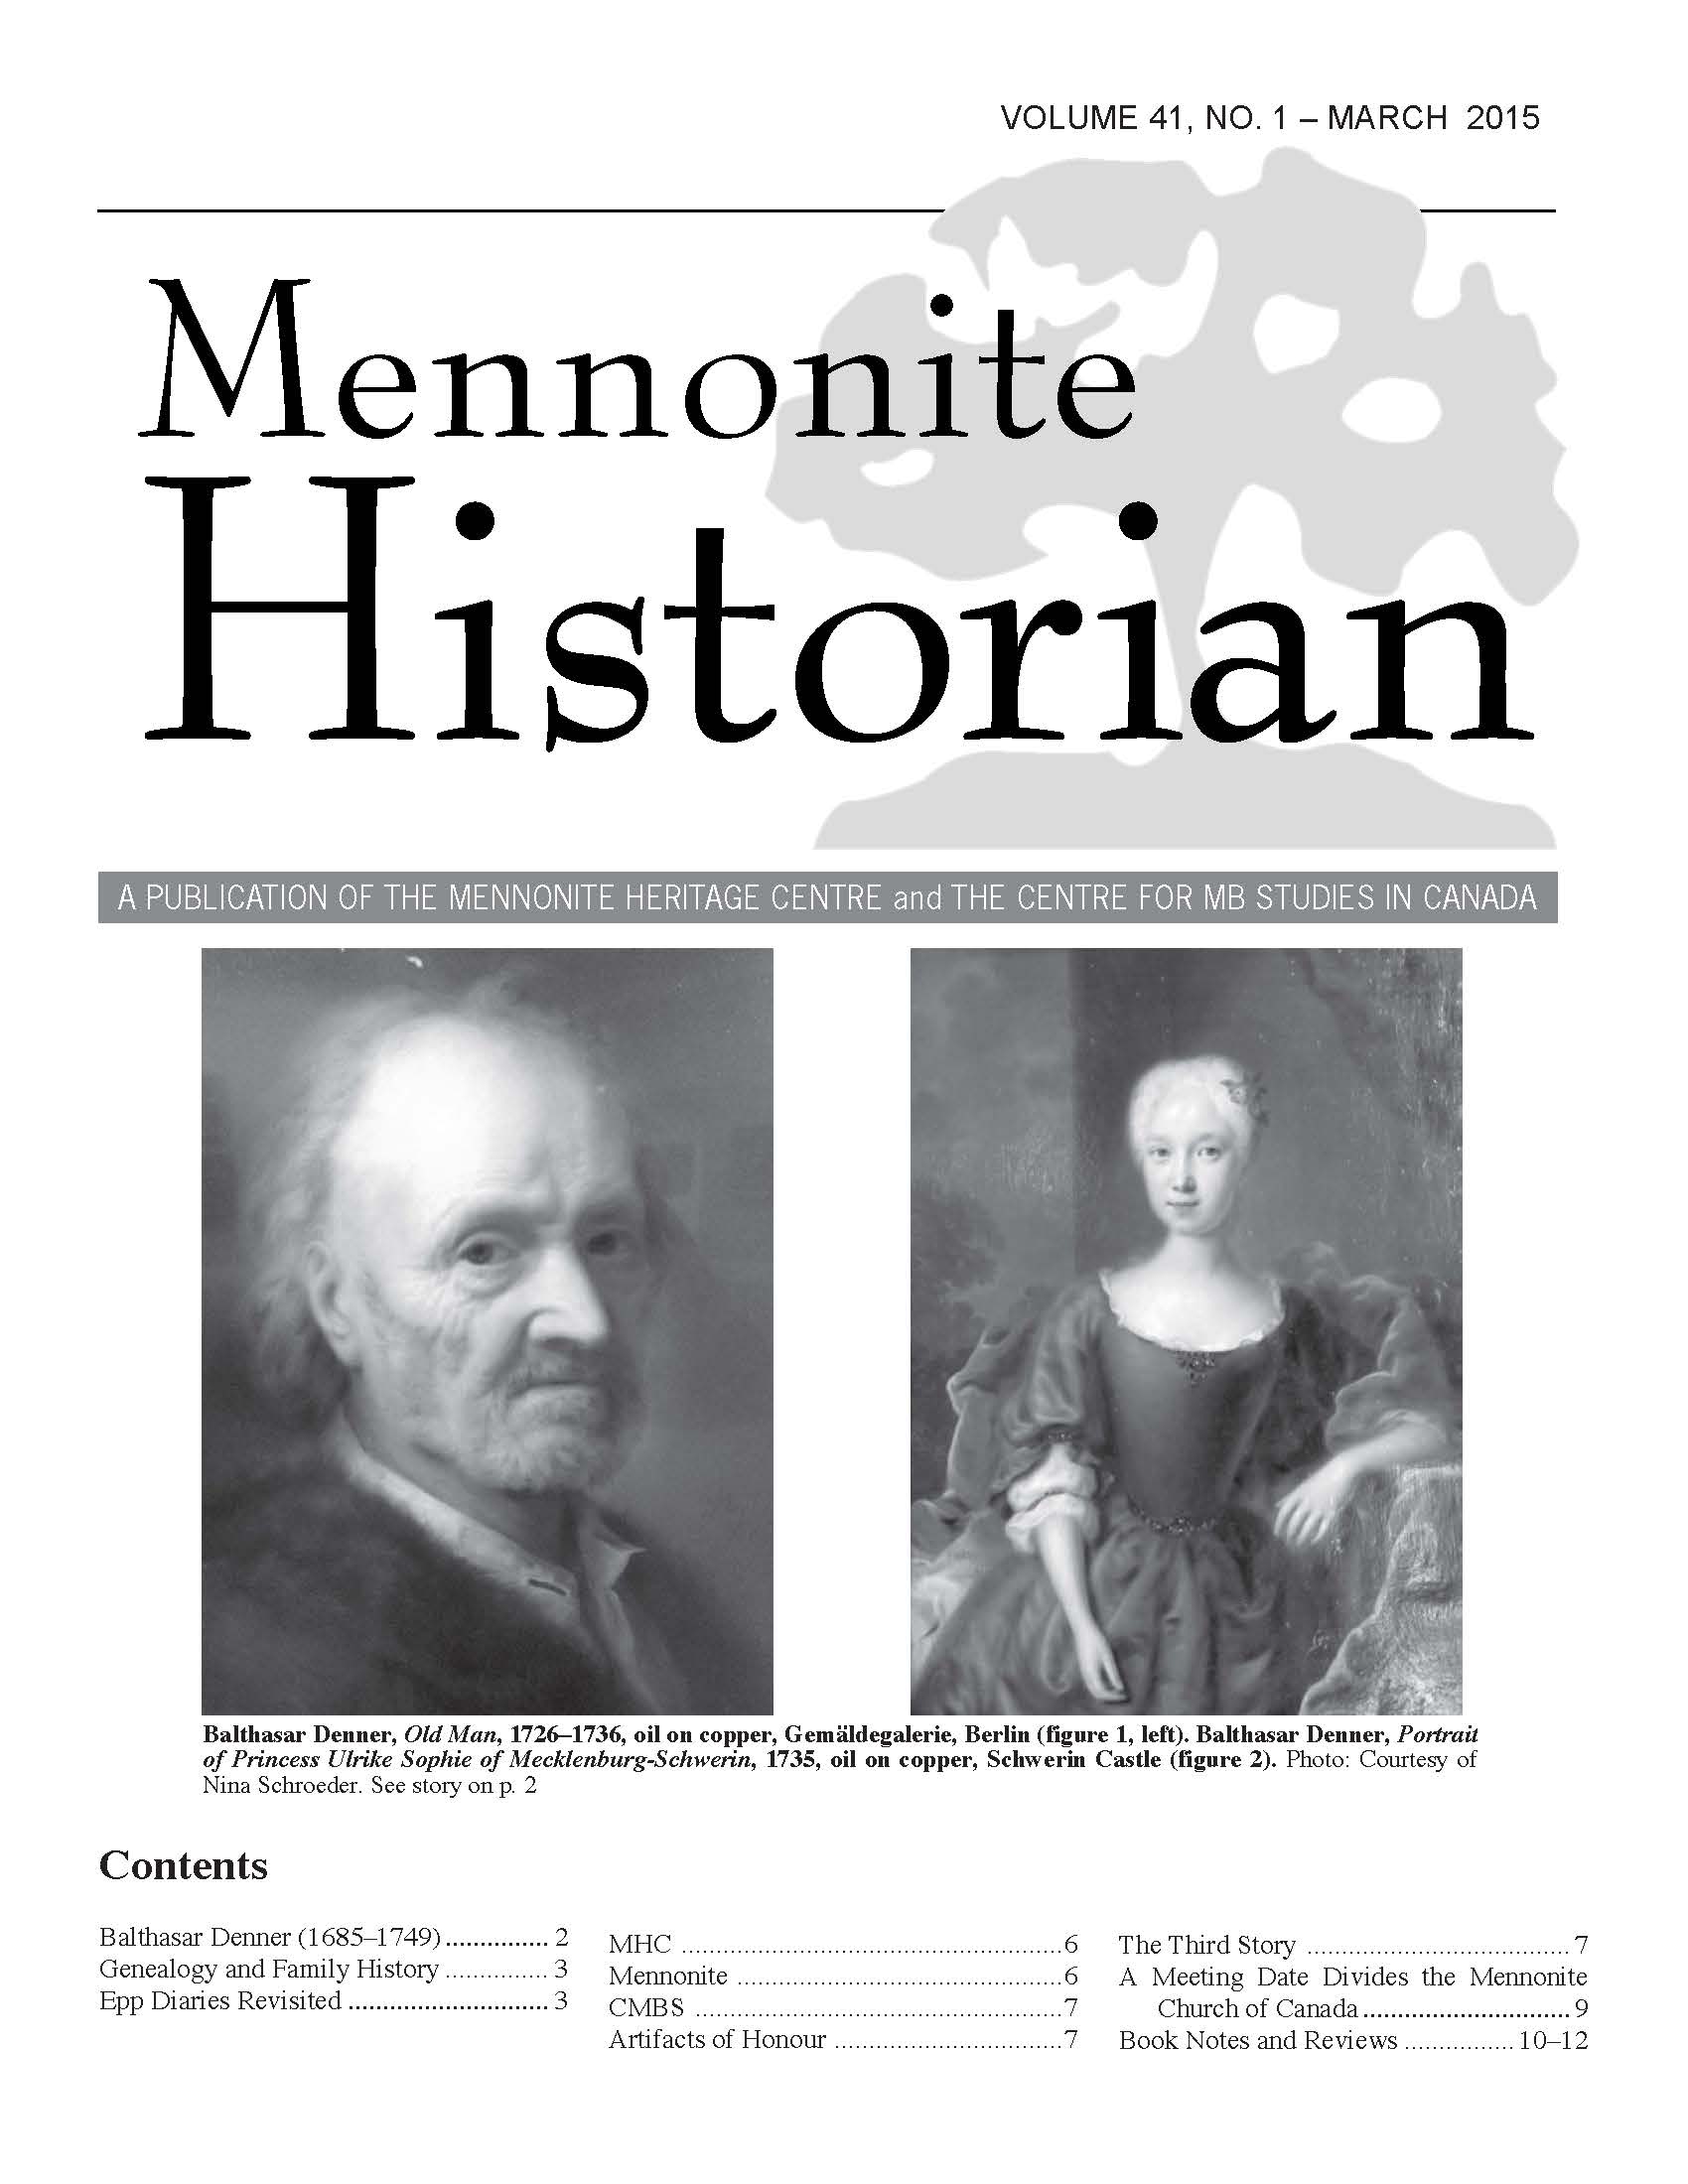 Mennonite Historian (March 2015)